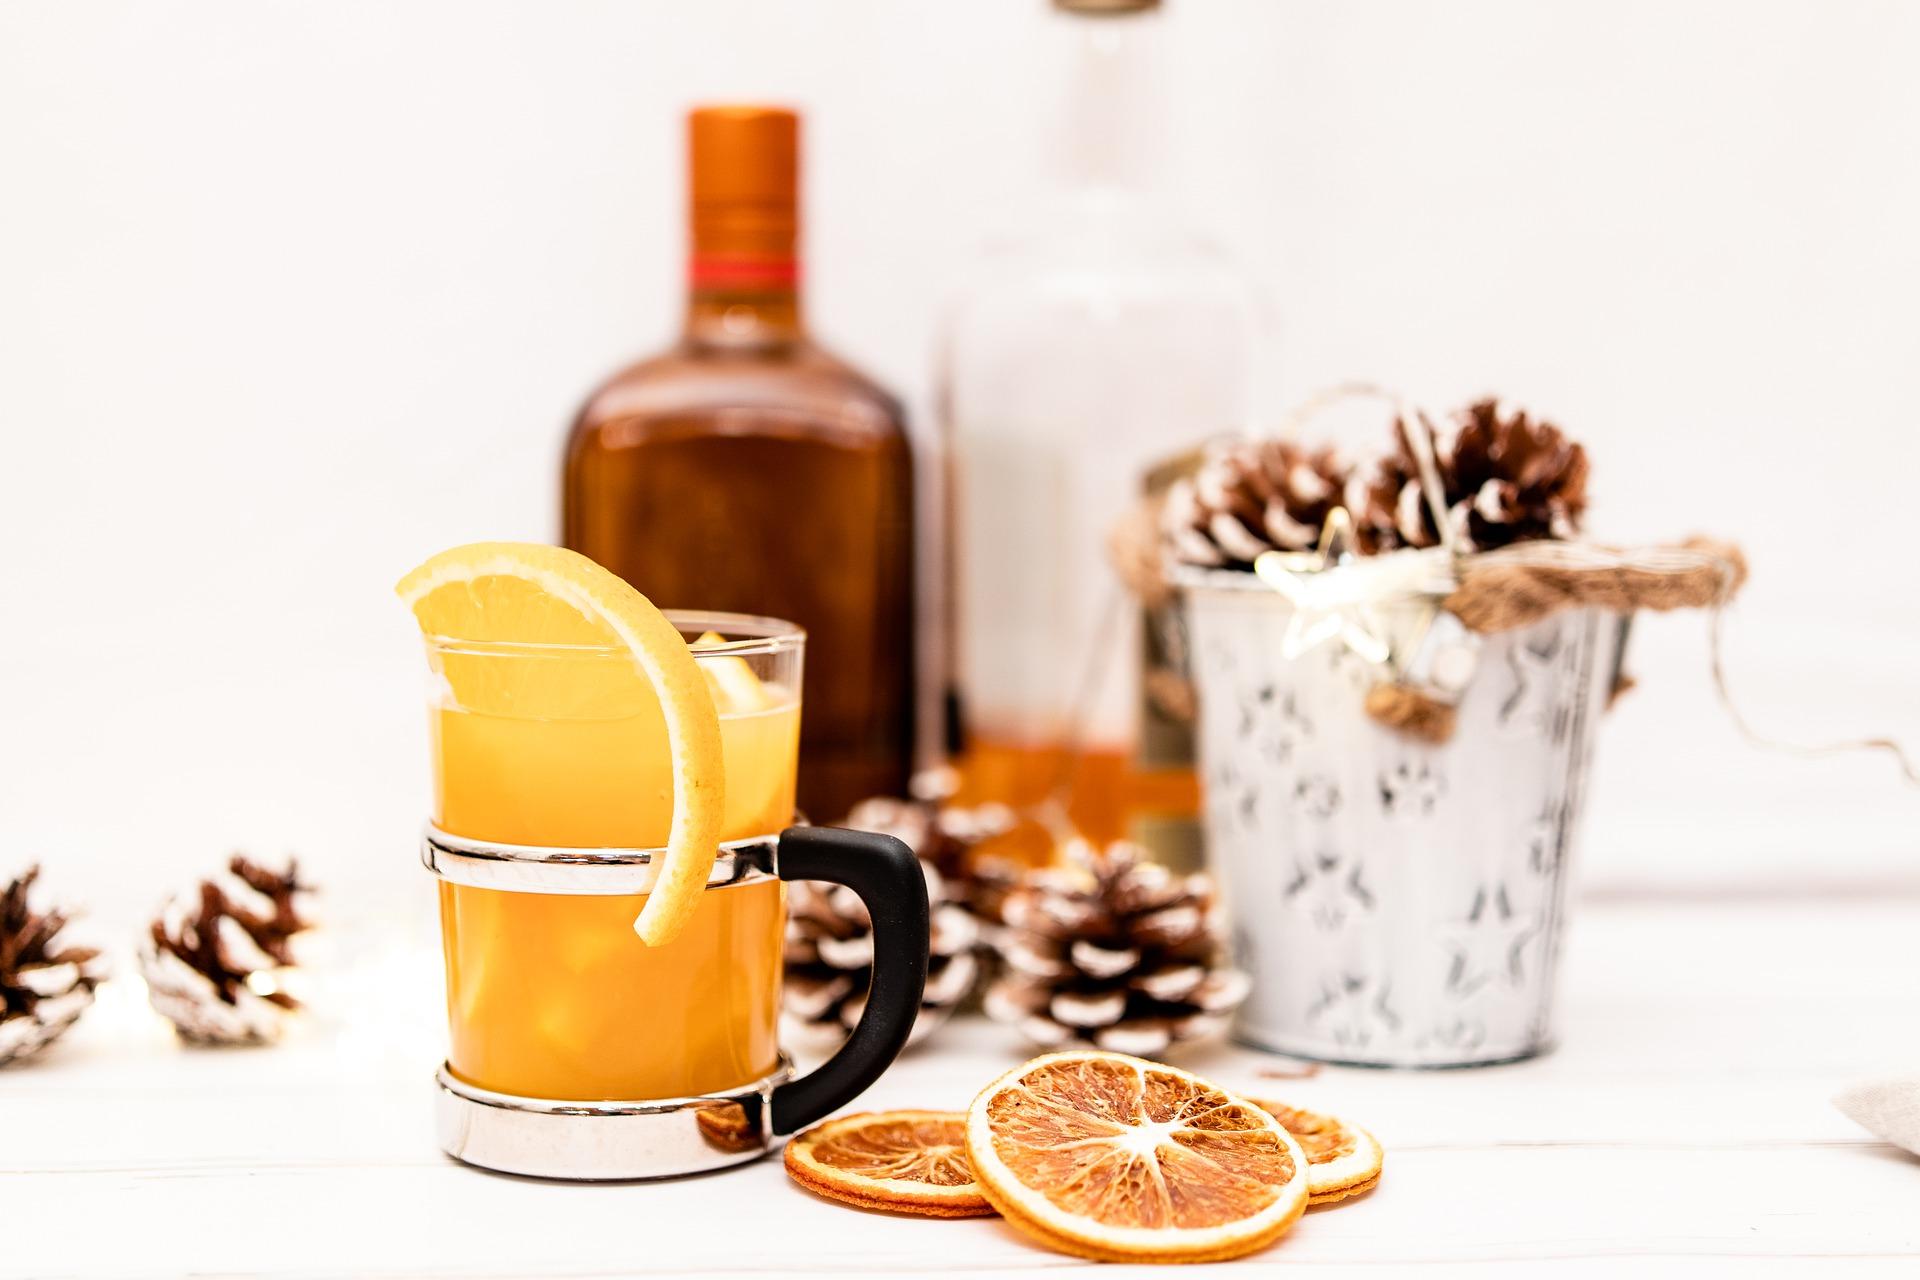 Weihnachtliches Bild von Punsch mit Orange im Glas.